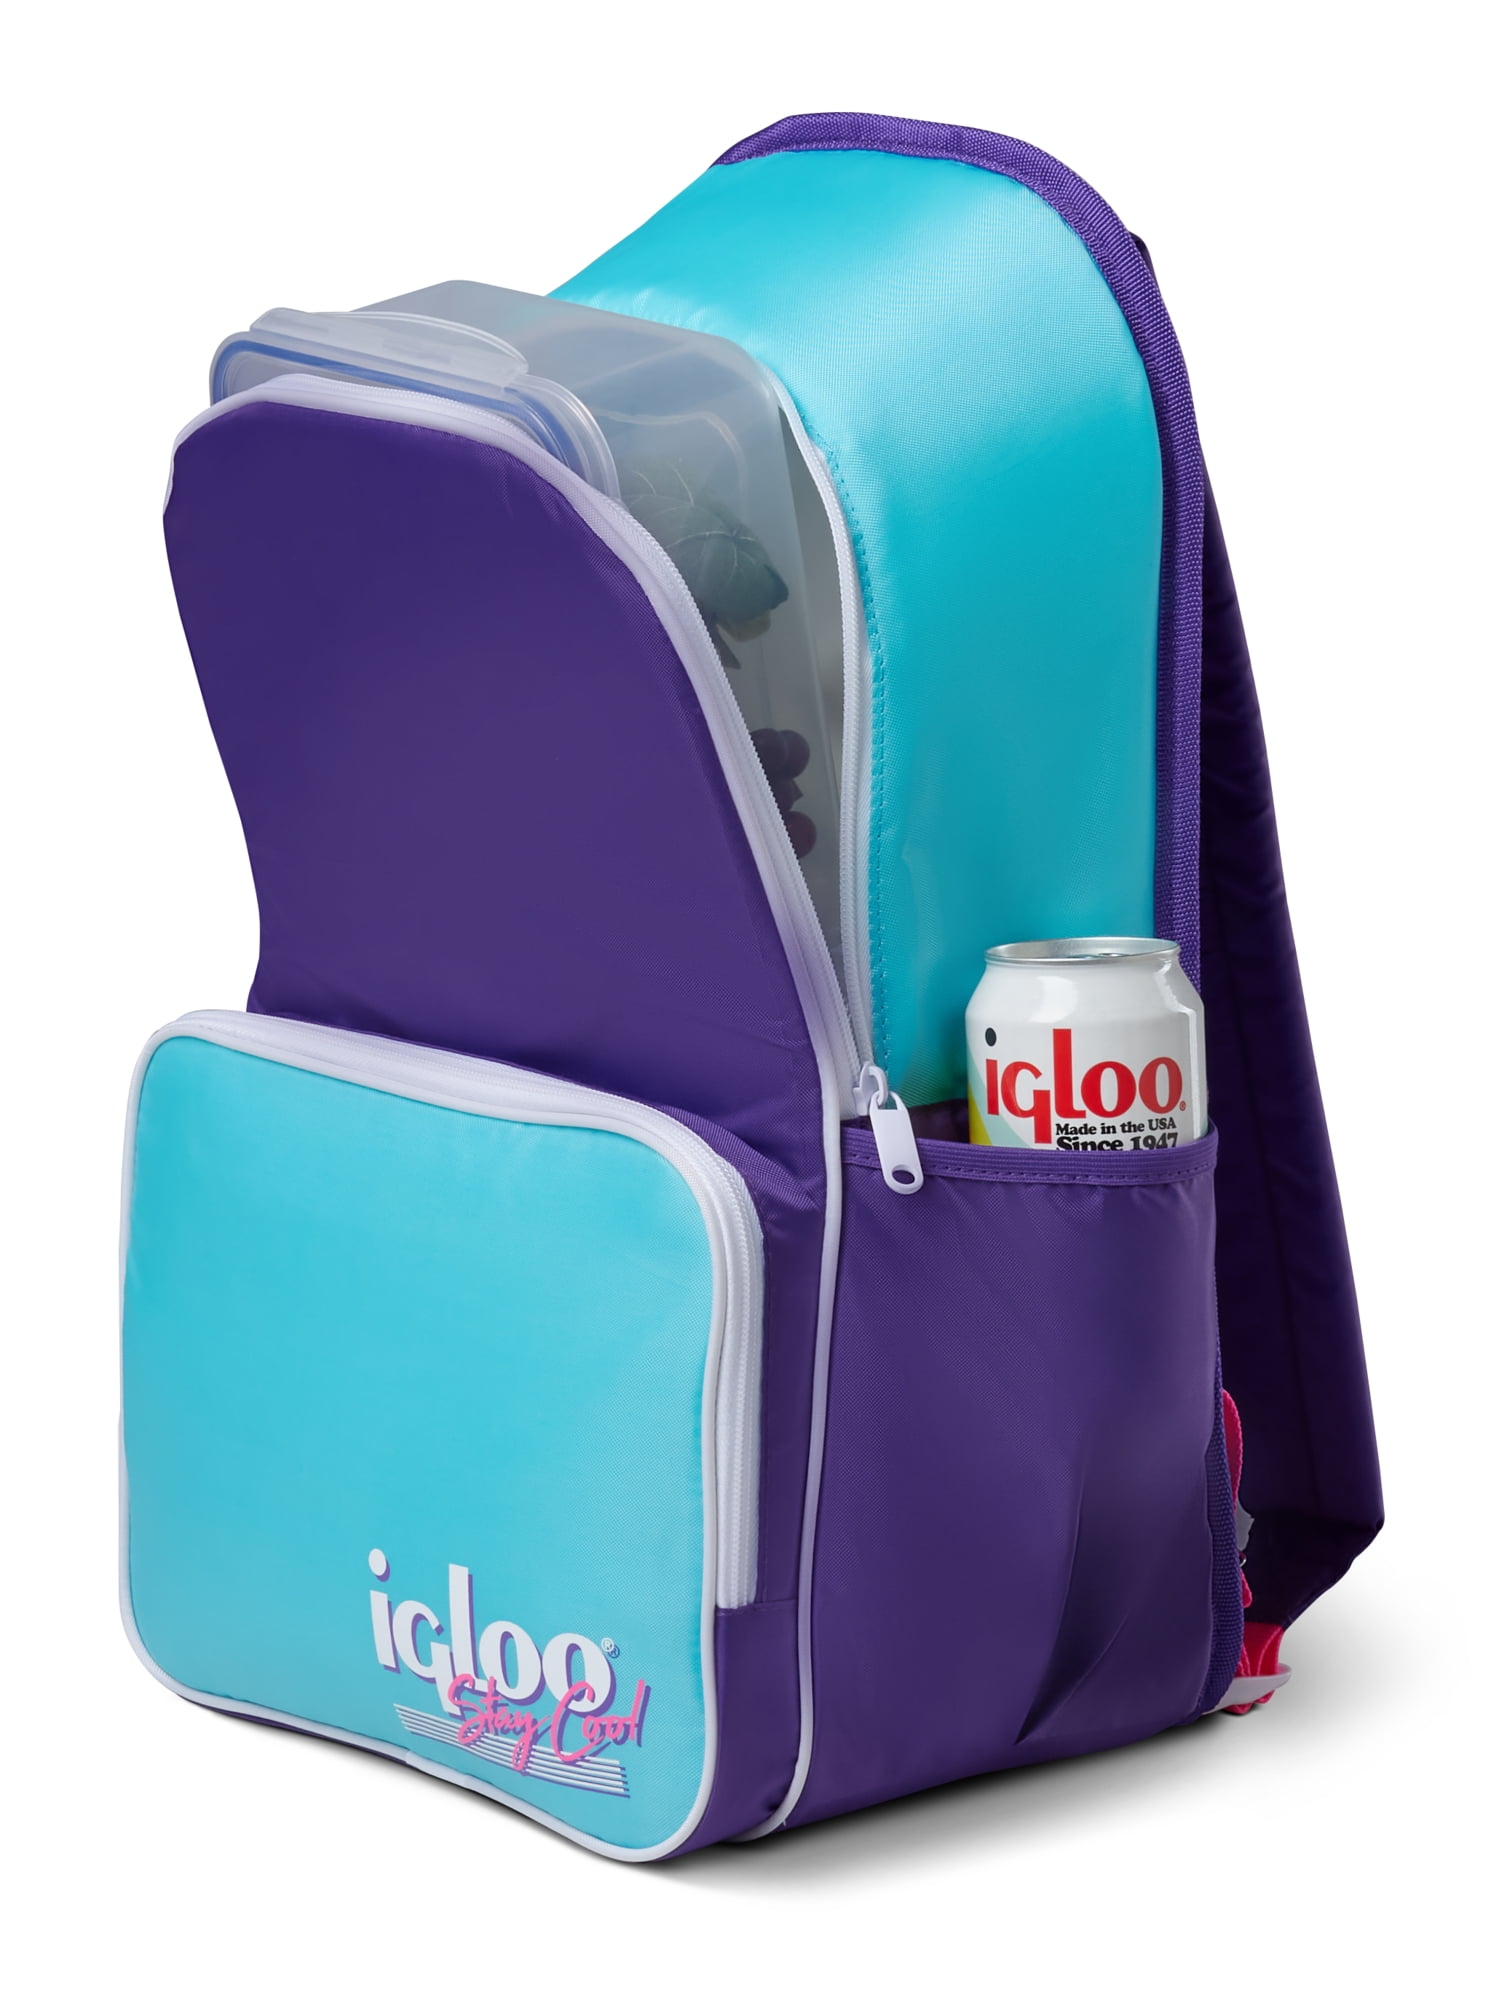 igloo retro backpack